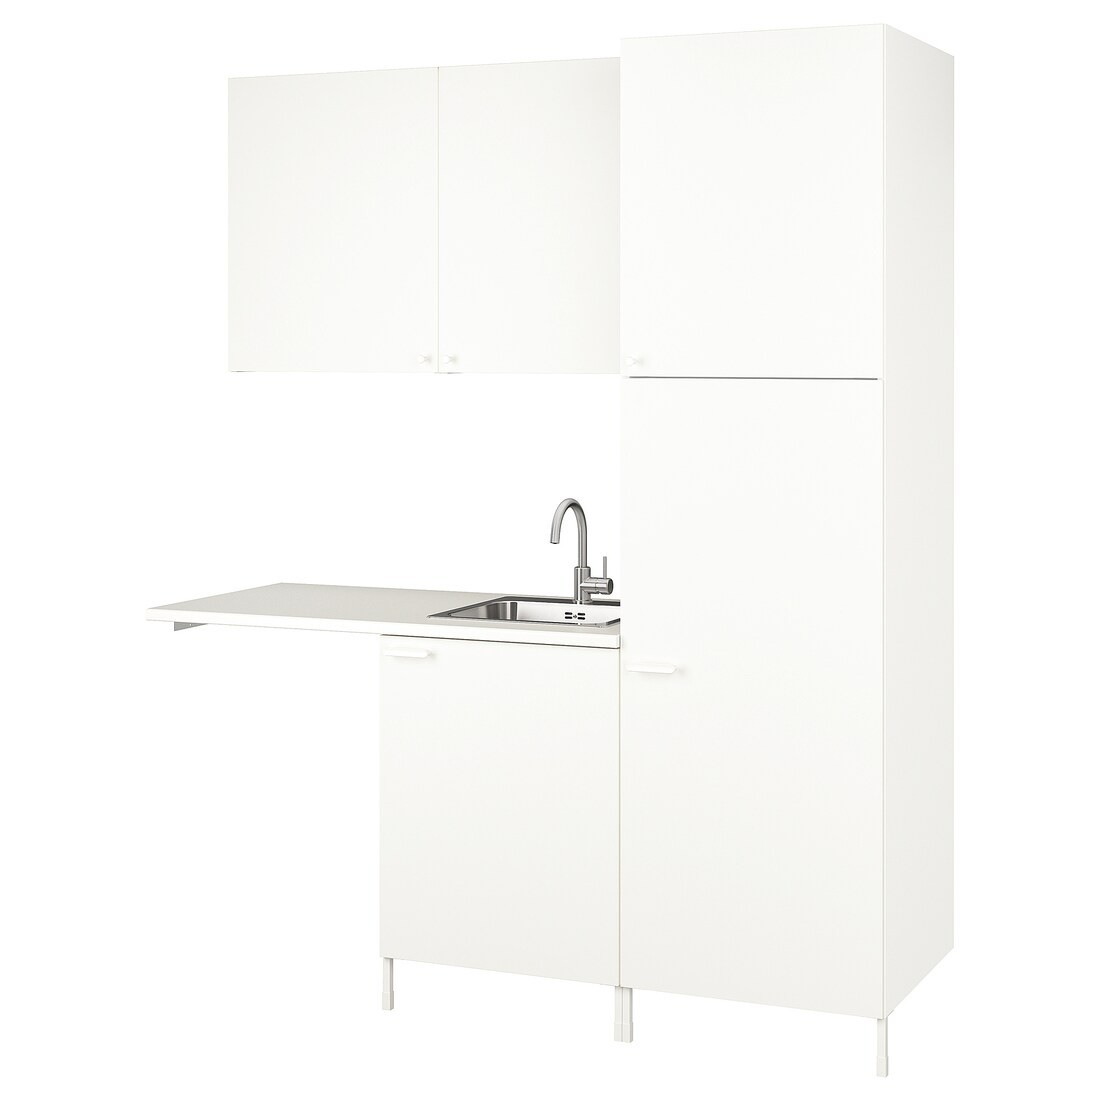 IKEA ENHET ЭНХЕТ Комбинация для хранения для прачечной, белый, 183x63.5x222.5 cм 49437514 494.375.14